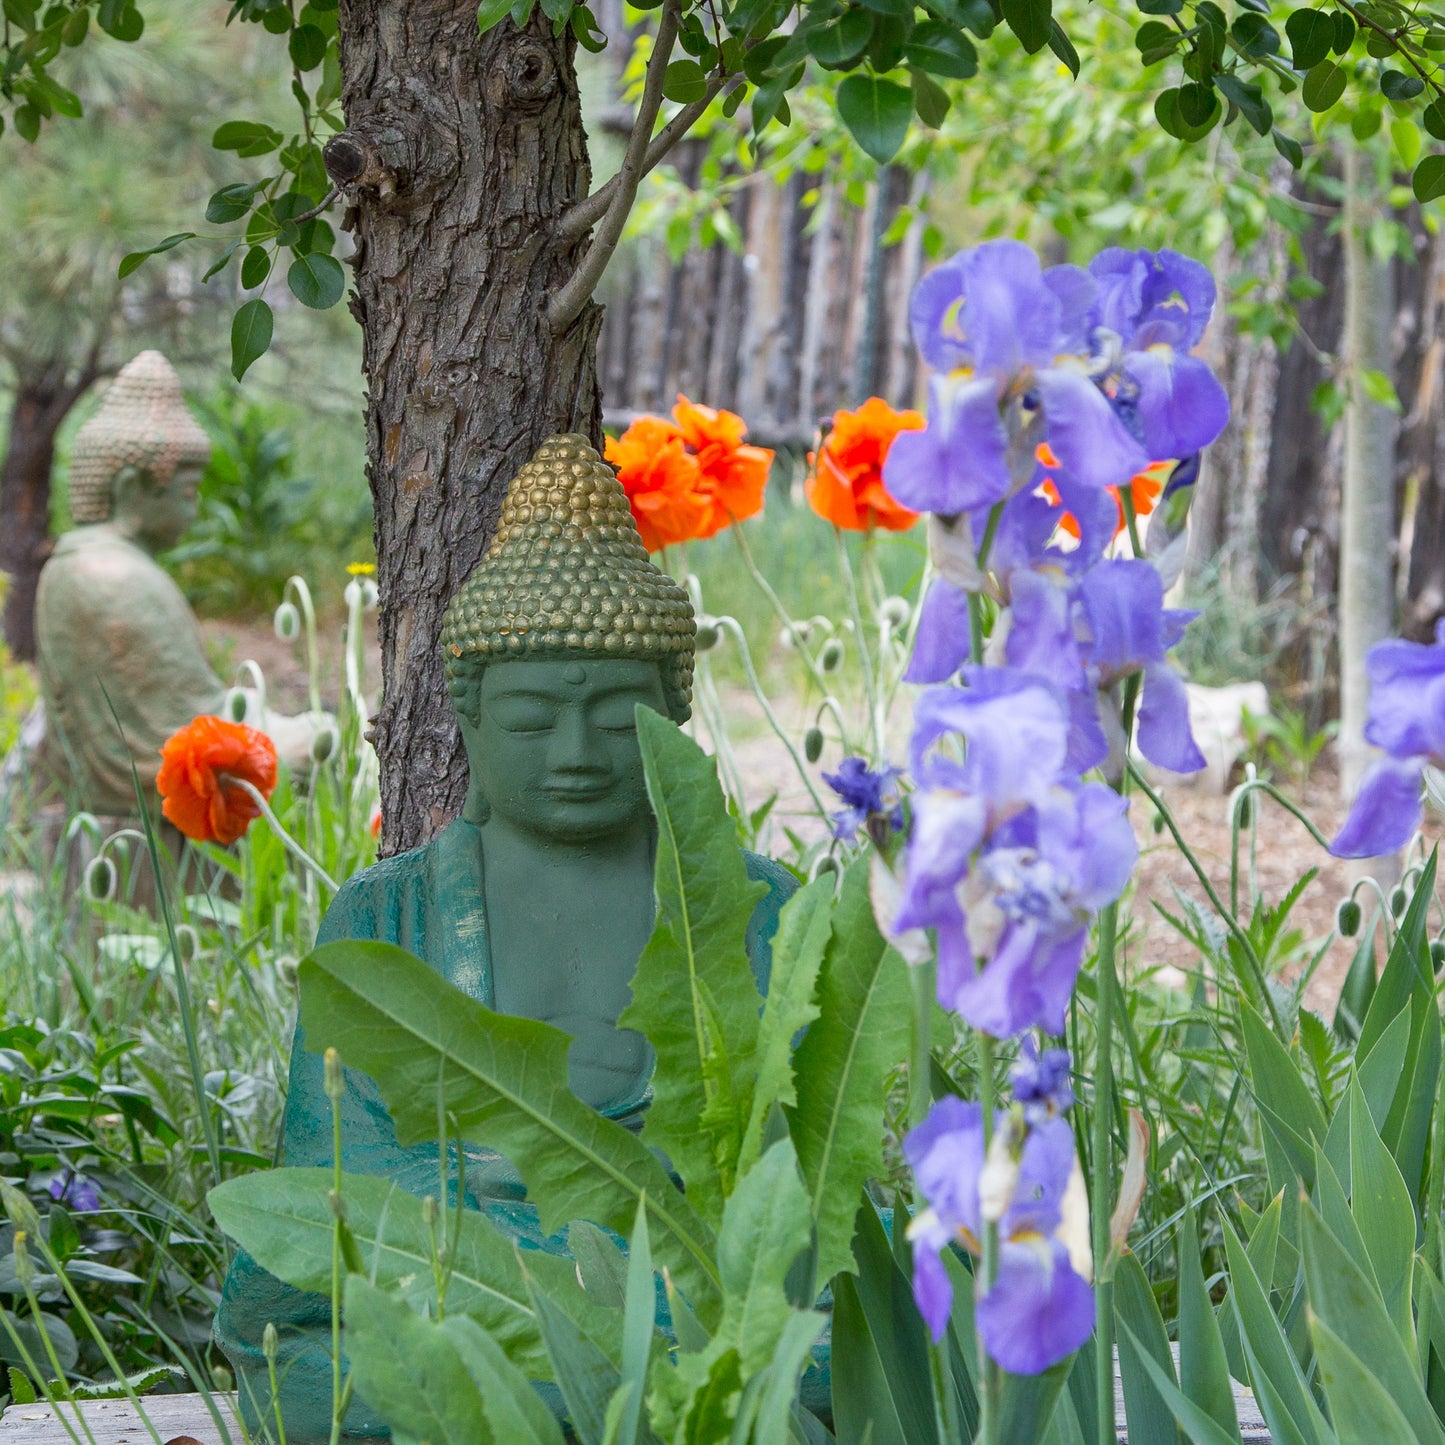 Buddha Garden with Iris and Poppys